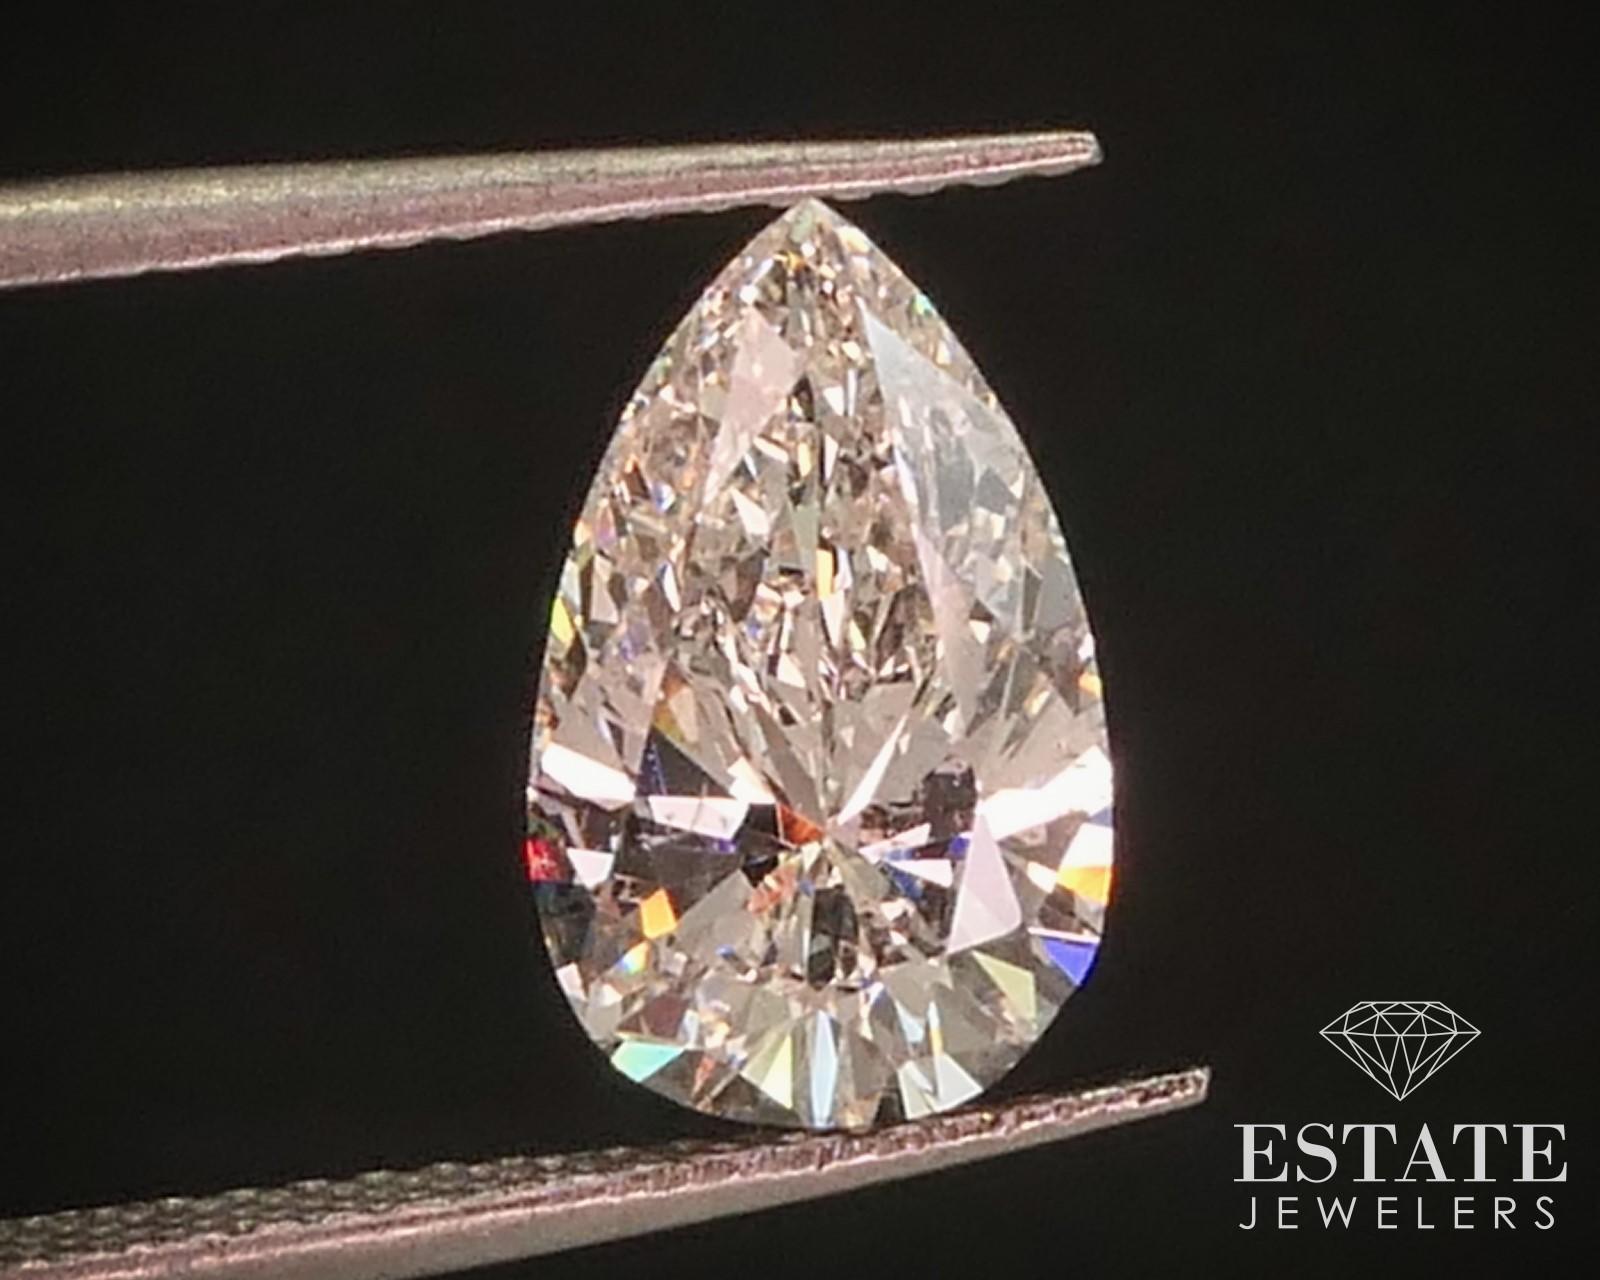 Diamant libre étincelant. Clarté SI1 et couleur J. Numéro GIA 6237154289. 10,7 mm par 6,6 mm par 4,2 mm